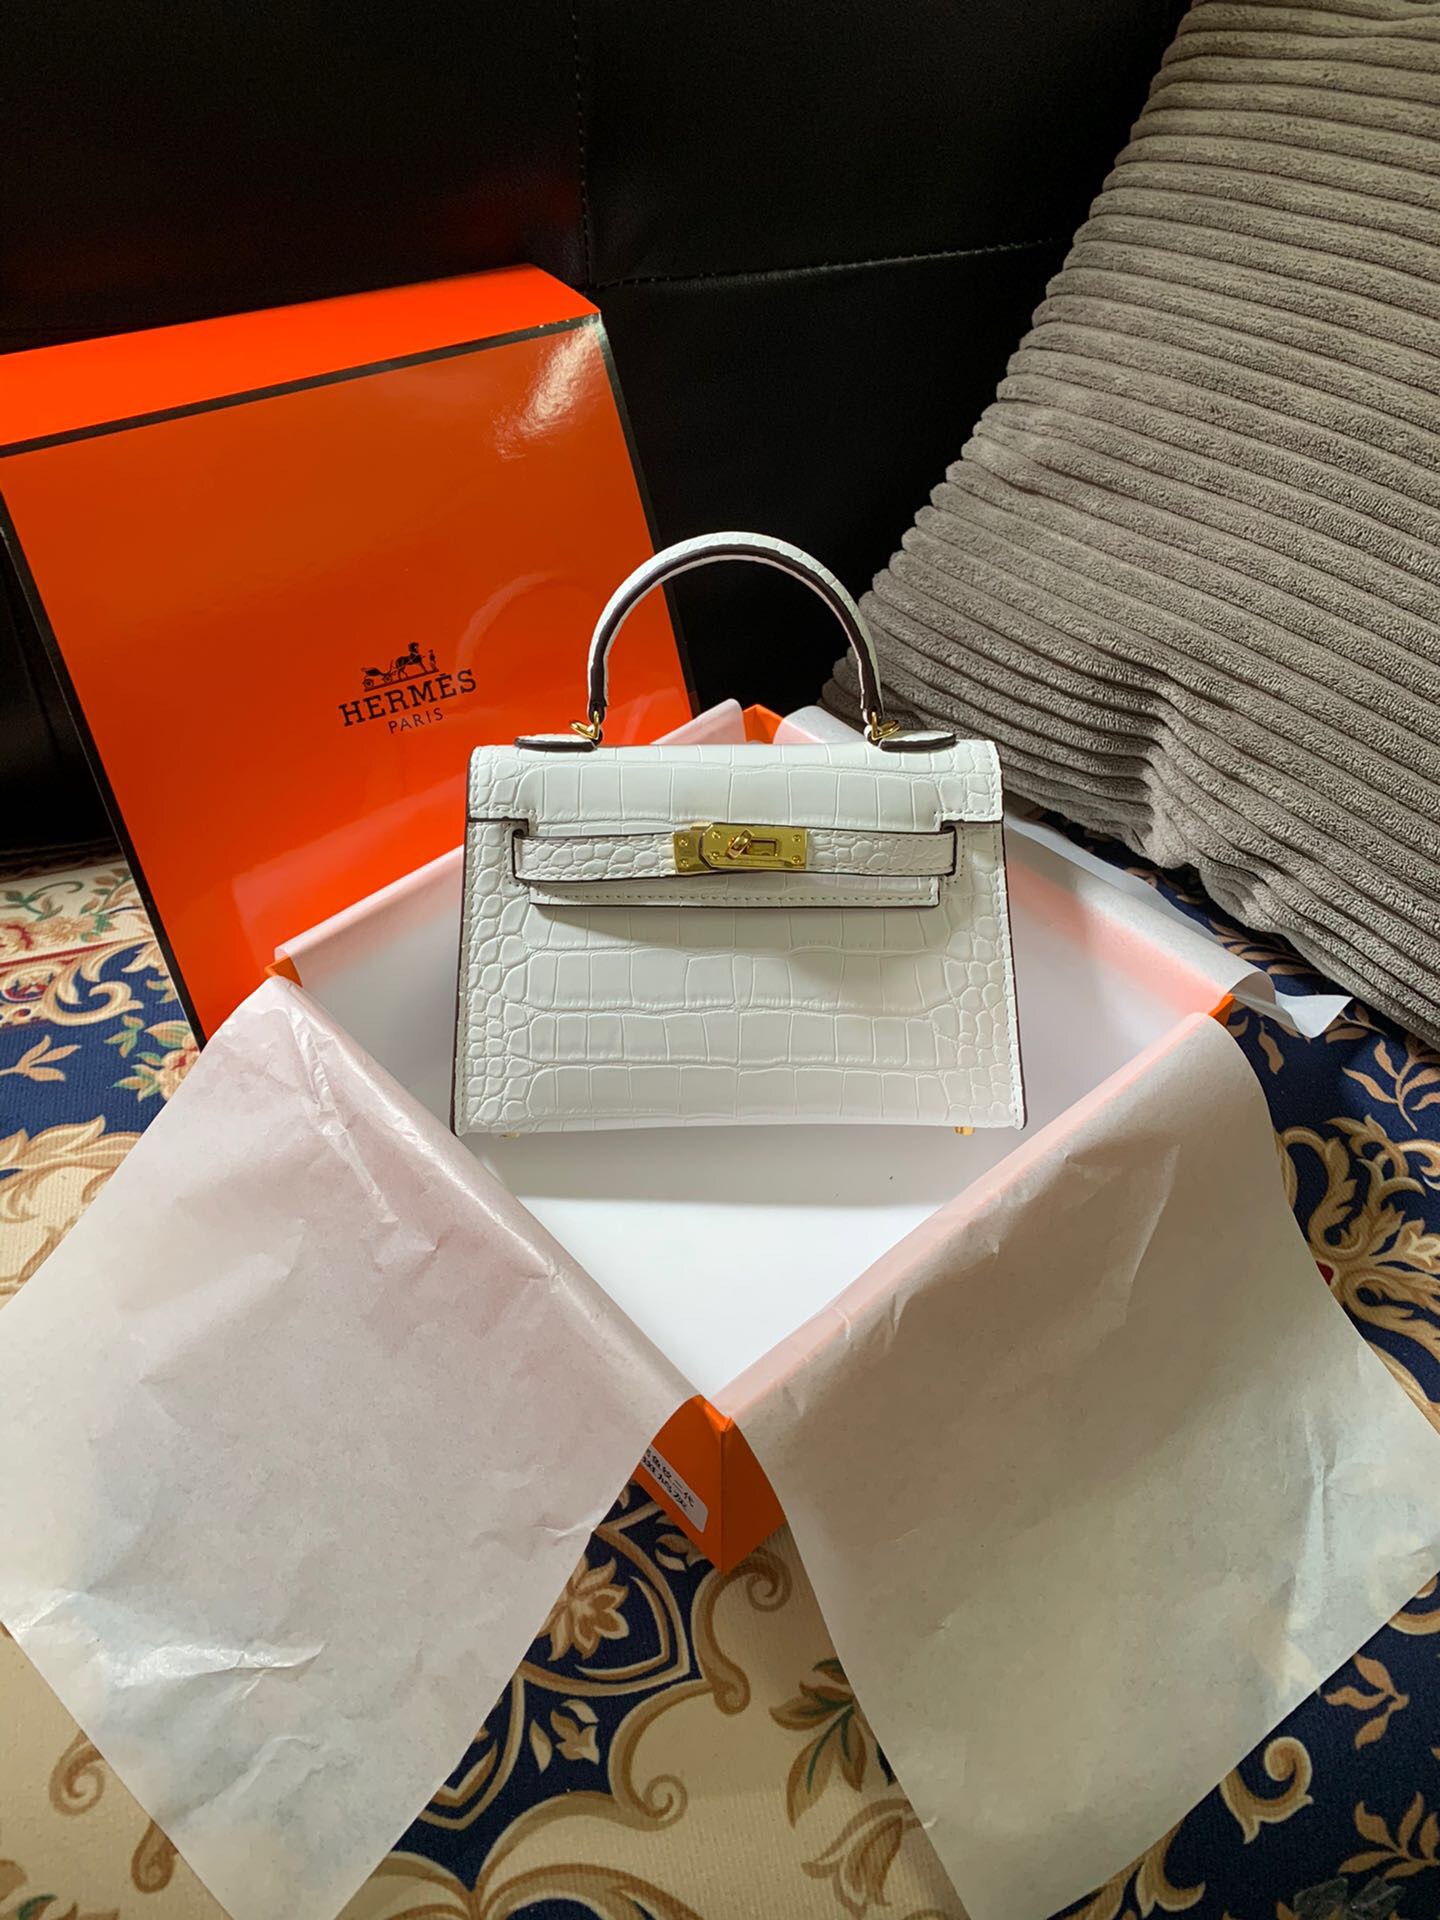 Hermes Mini Kelly Bag Price 2019-20 | NAR Media Kit